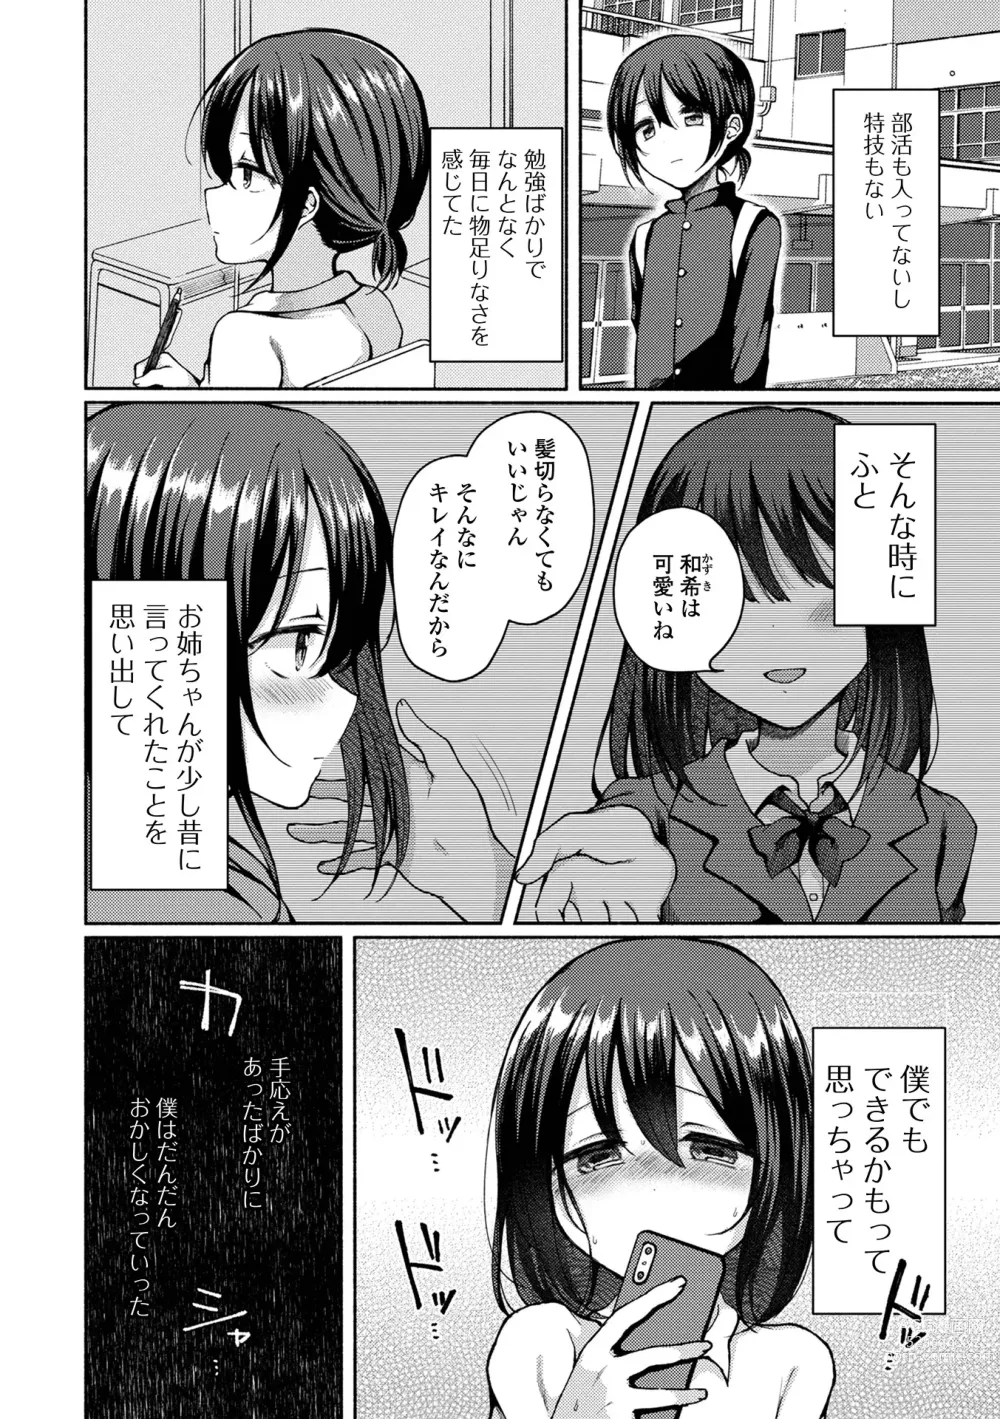 Page 8 of manga Gekkan Web Otoko no Ko-llection! S Vol. 85